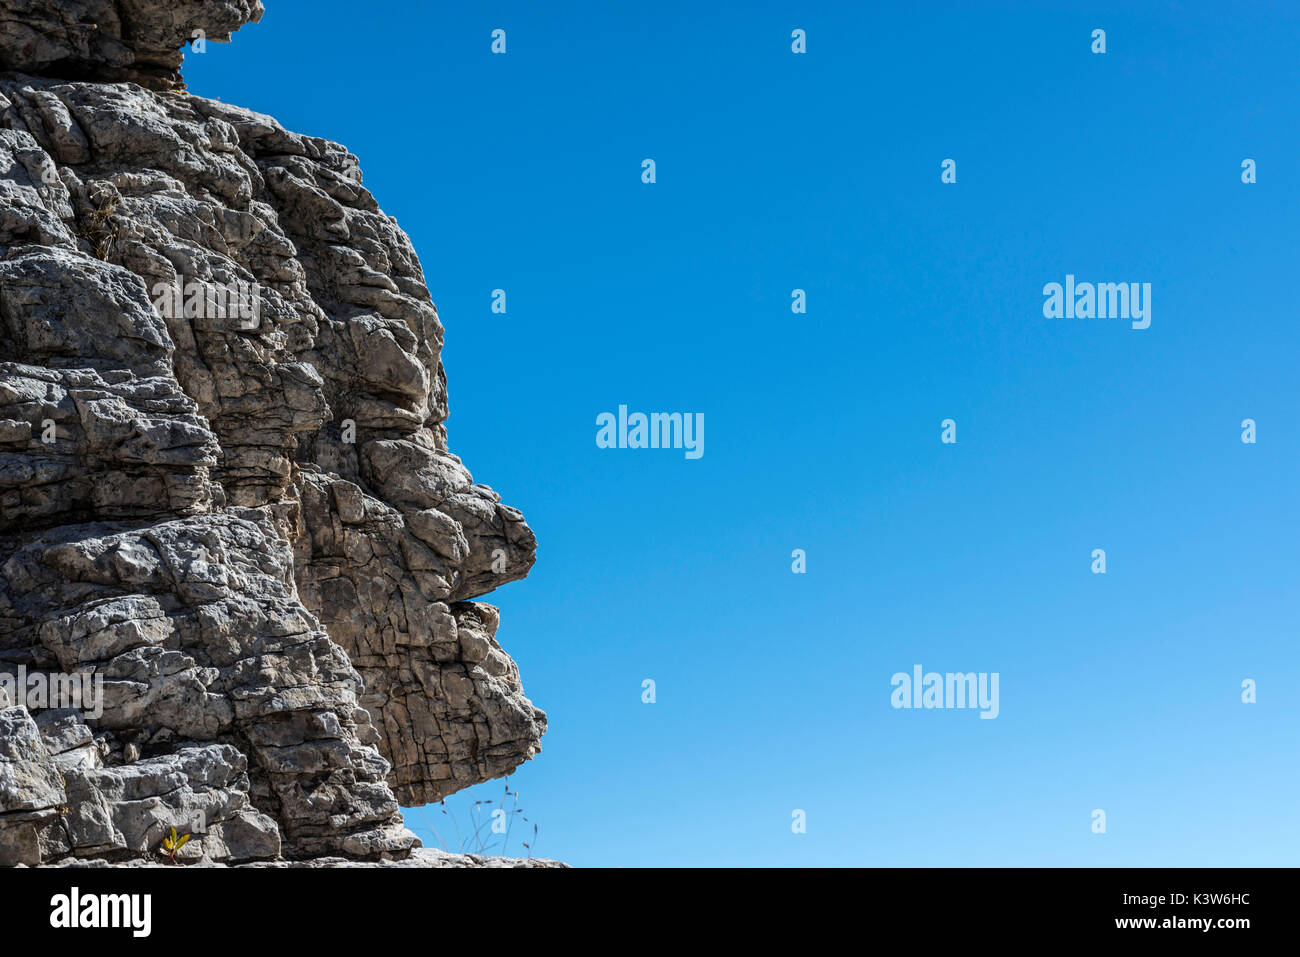 Europe, Italy, Veneto, Belluno, Cadore, Dolomites, Mondeval, especially rock depicting a human face. Stock Photo